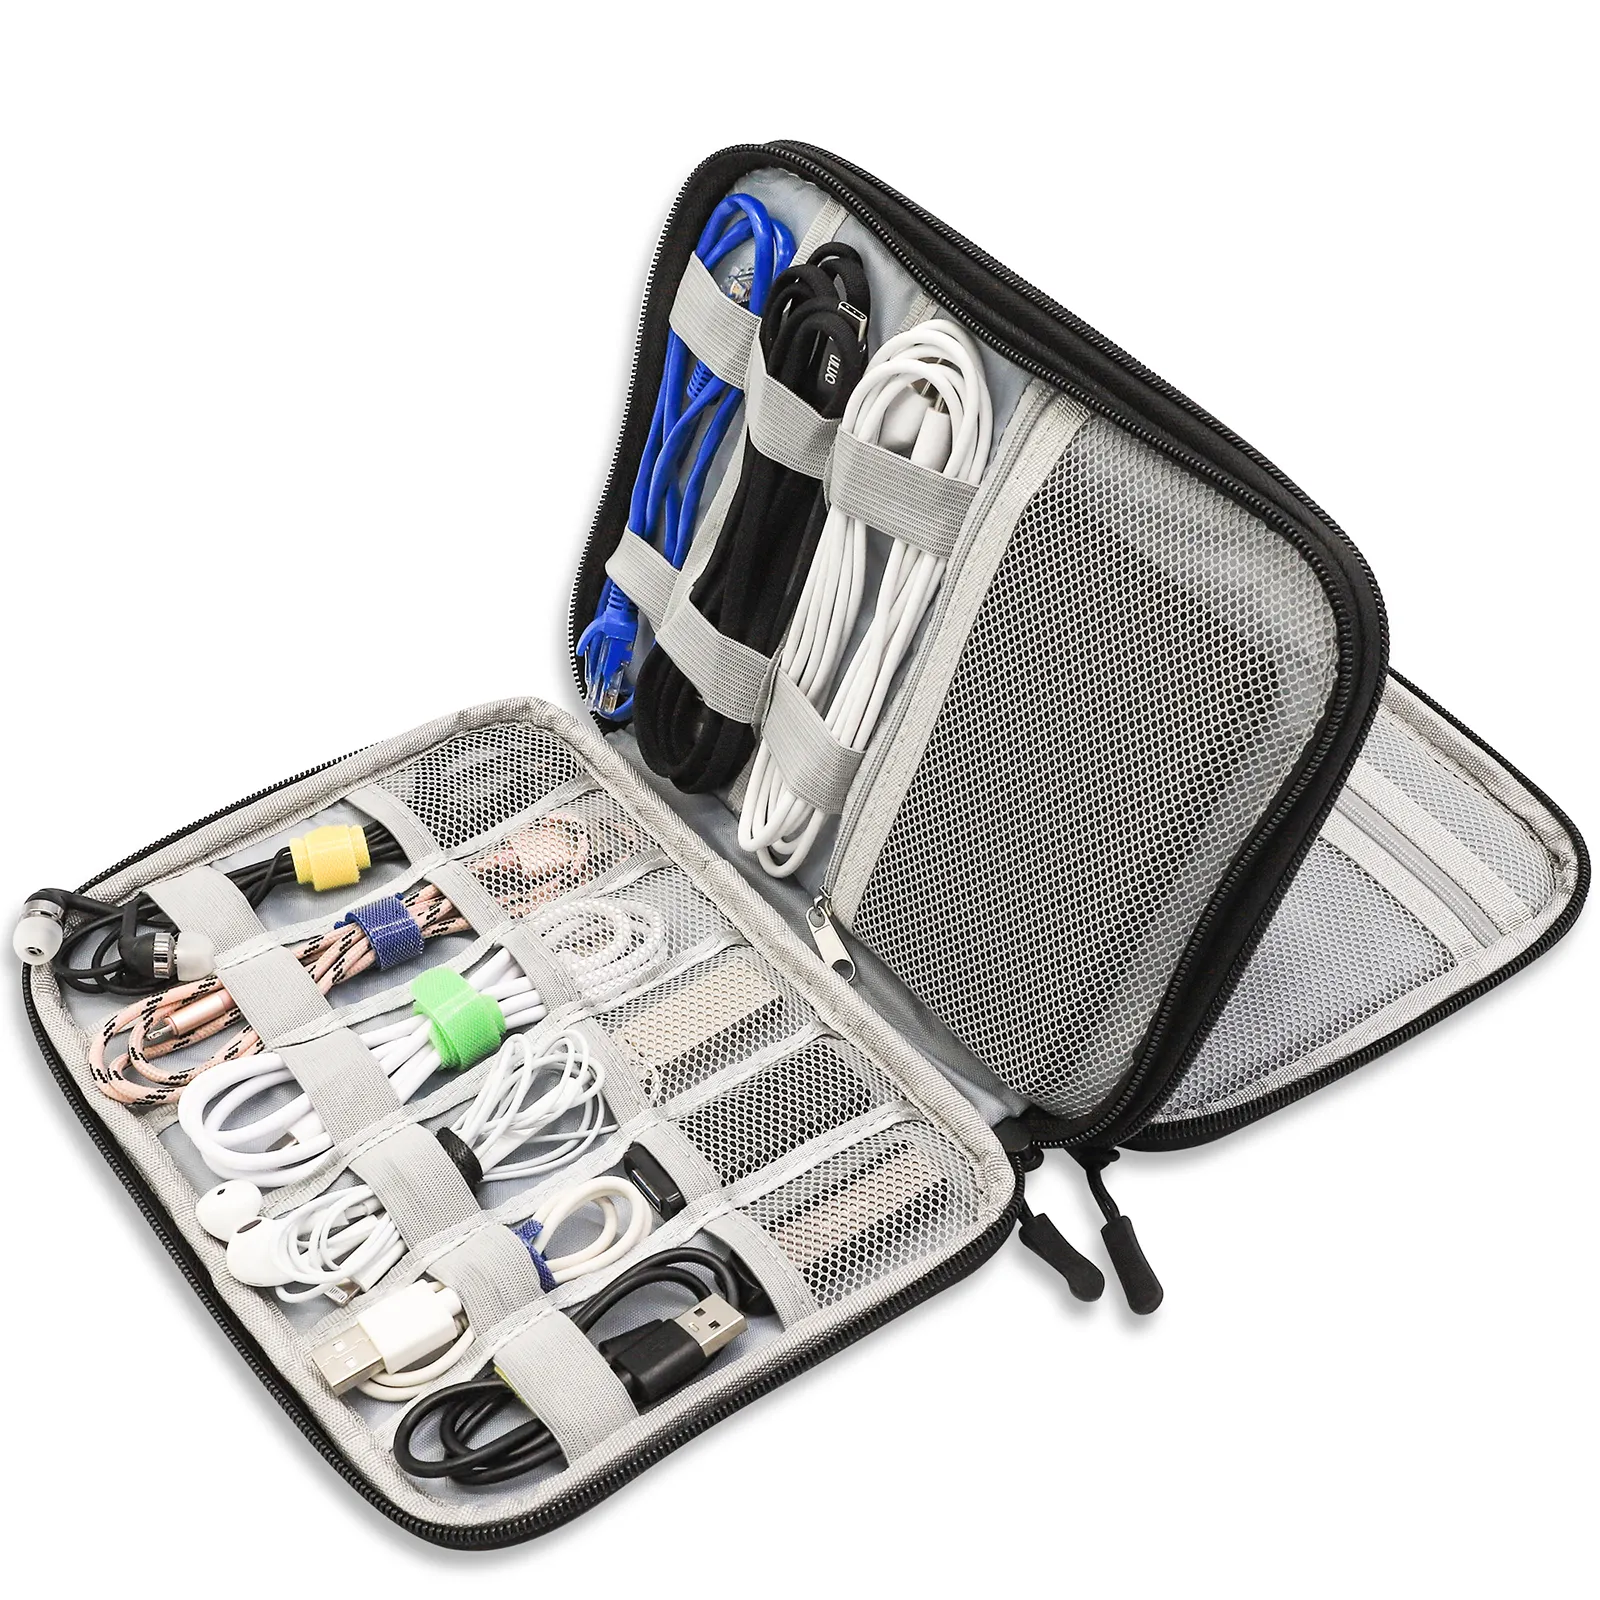 Toptan taşınabilir su geçirmez çift katmanlar All-in-One saklama çantası elektronik aksesuarlar taşıma çantası seyahat kablo düzenleyici çanta